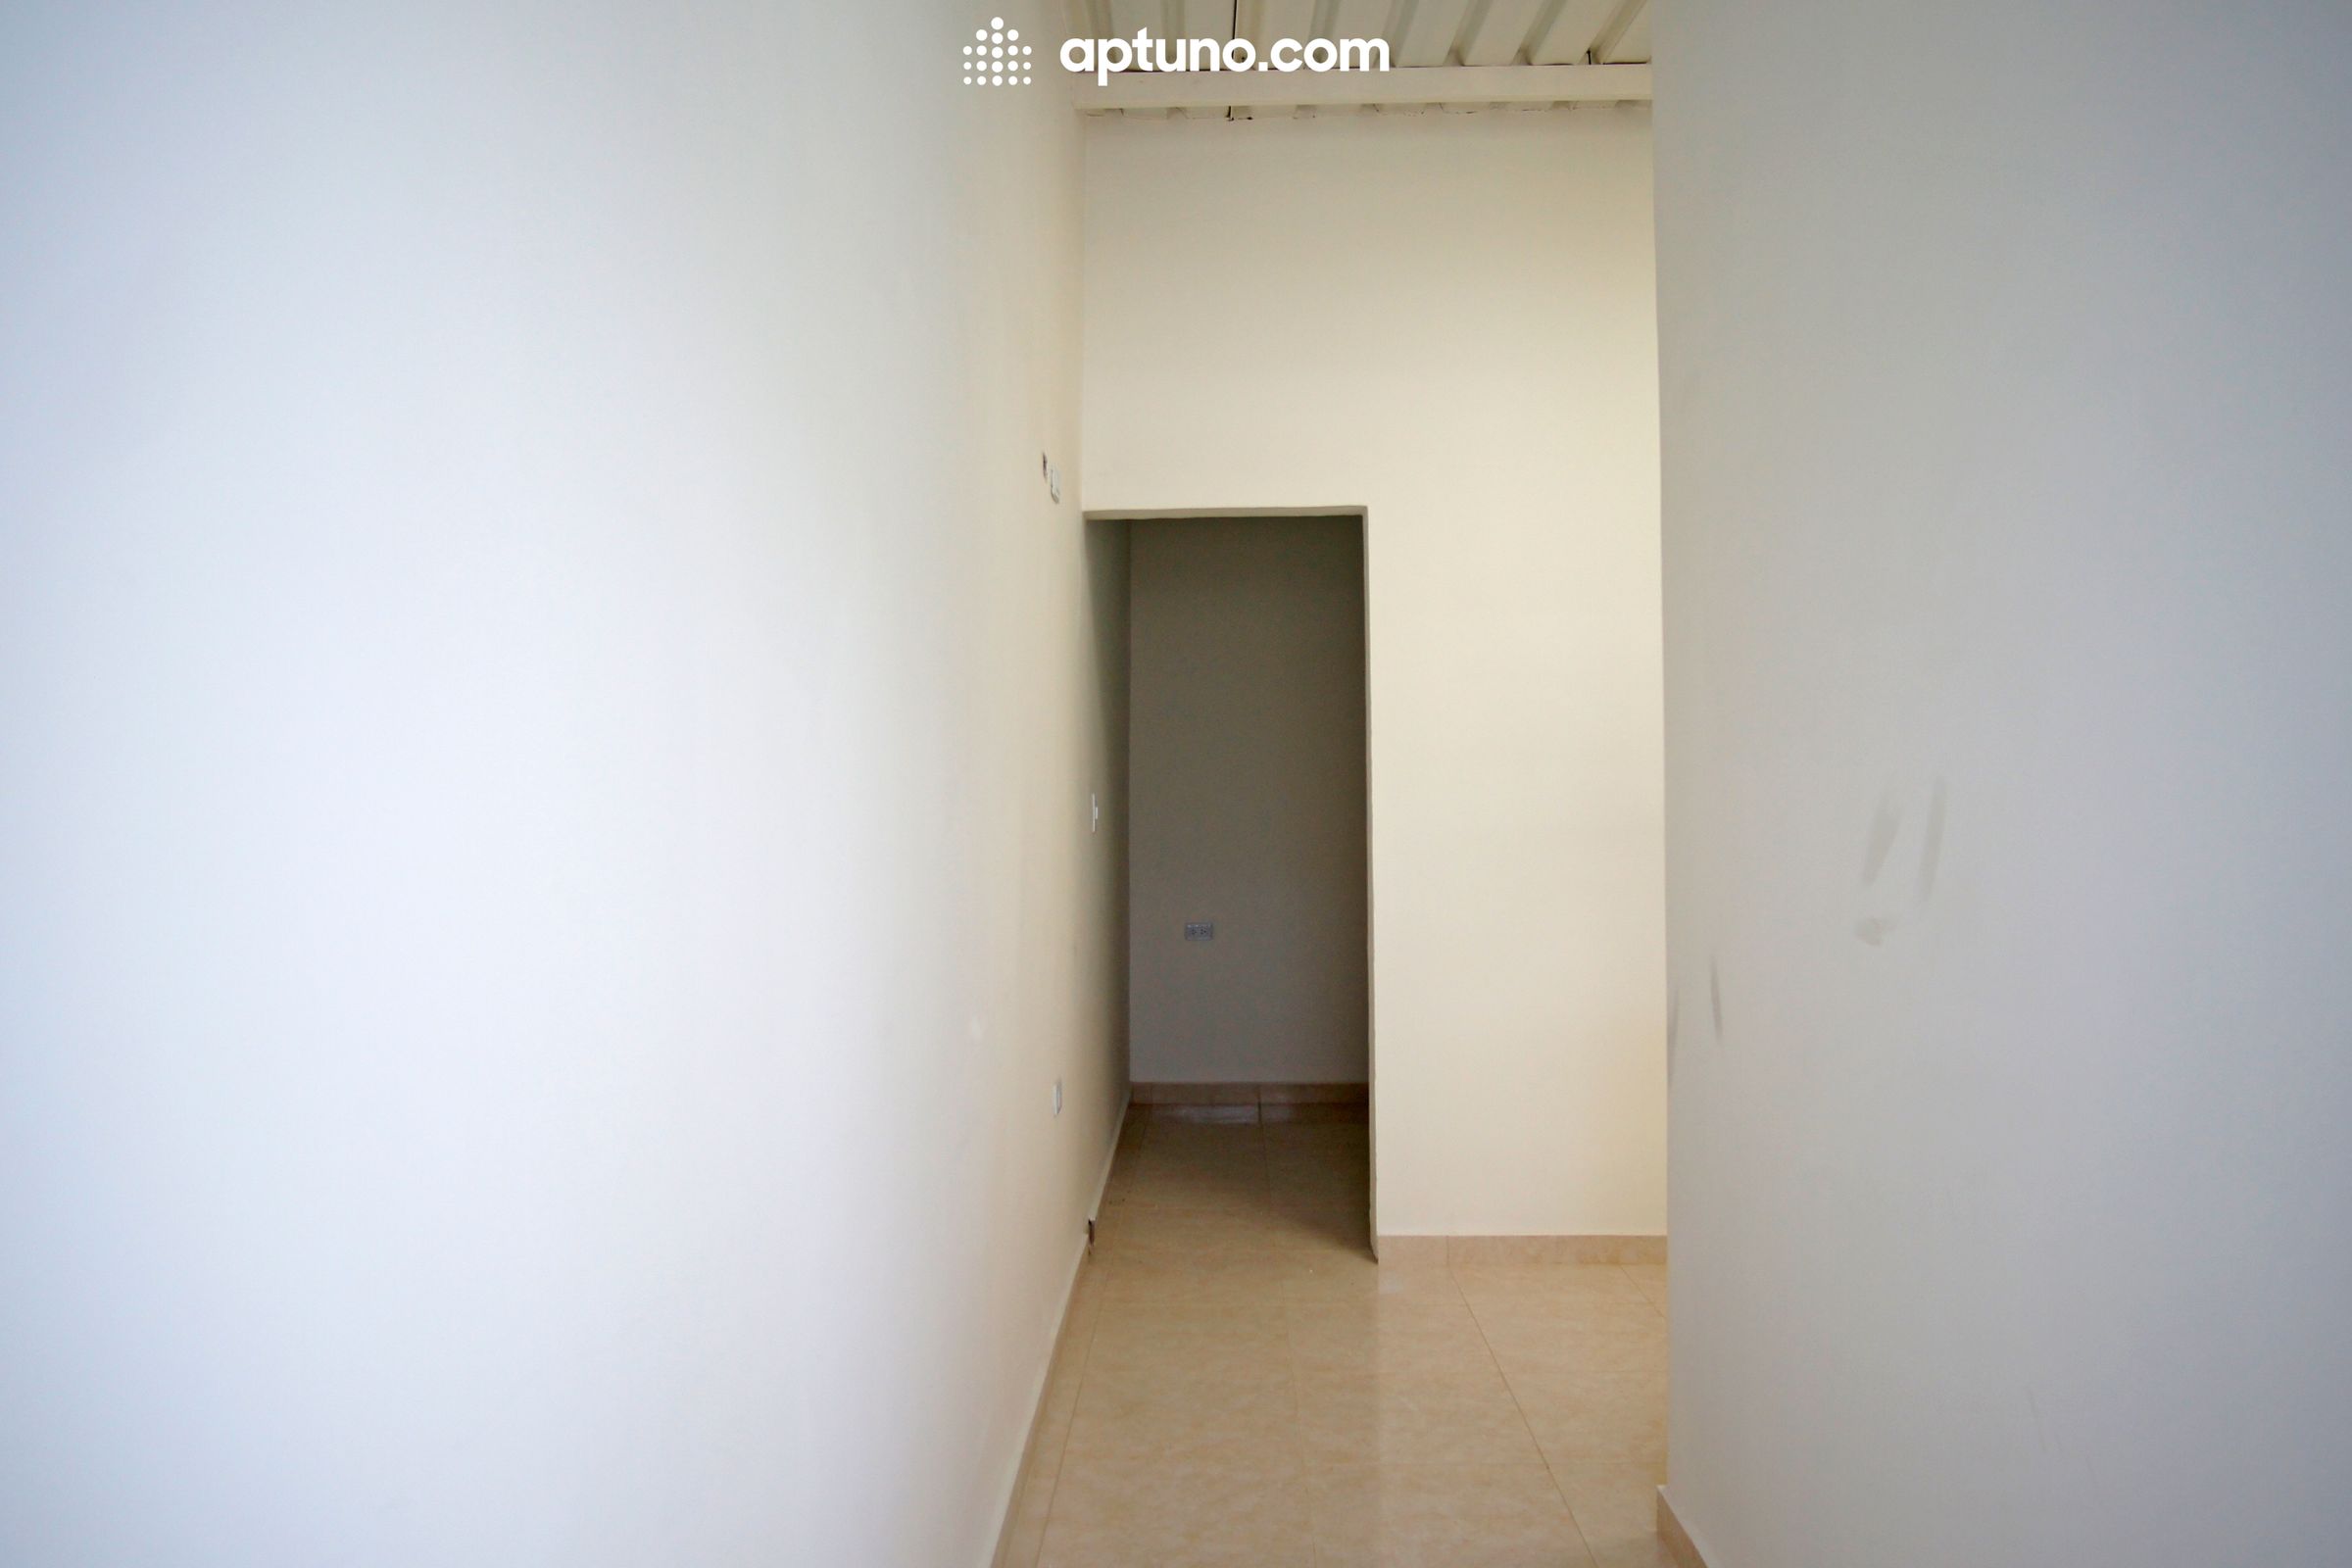 Apartamento en arriendo Colombia 50 m² - $ 1.000.000,00